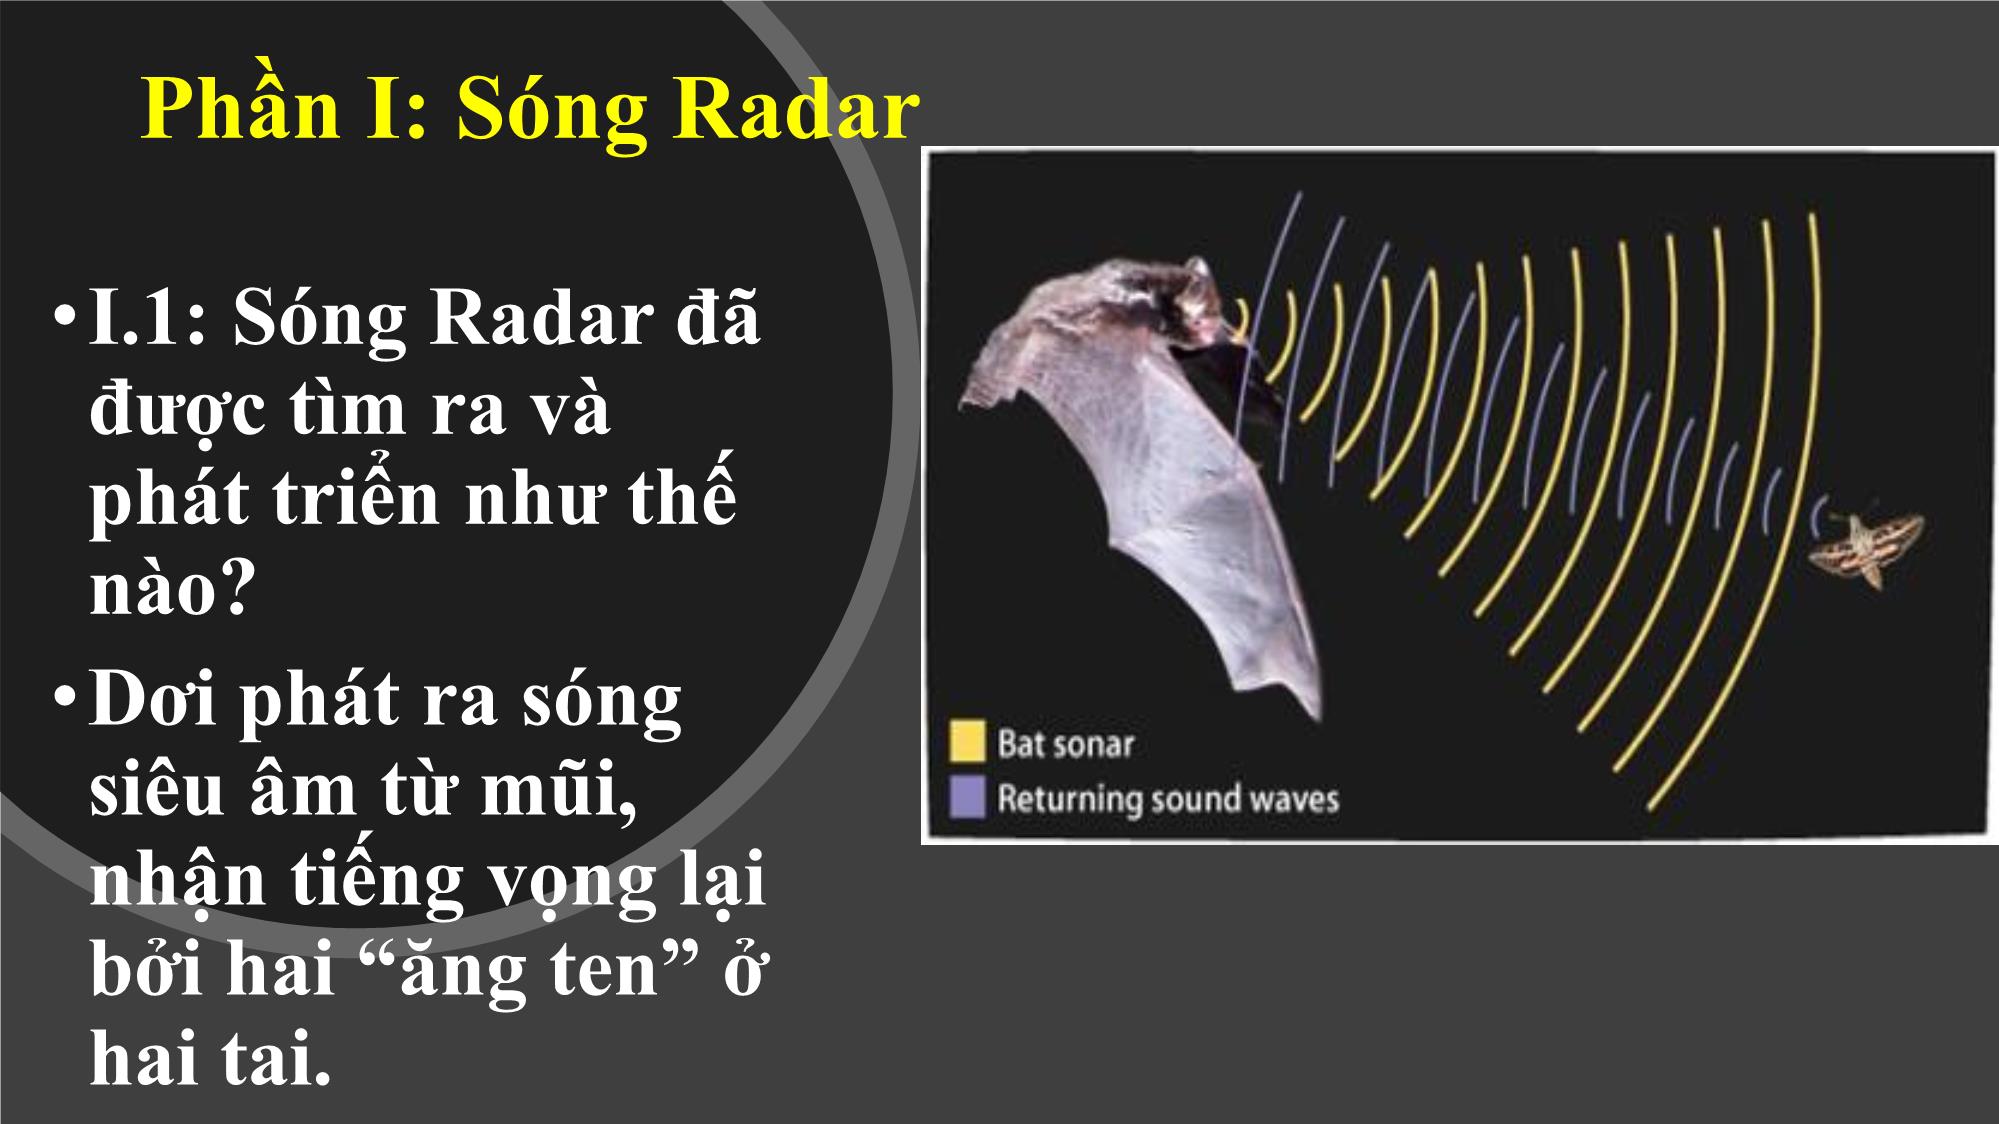 Báo cáo Sóng radar và ứng dụng trang 4